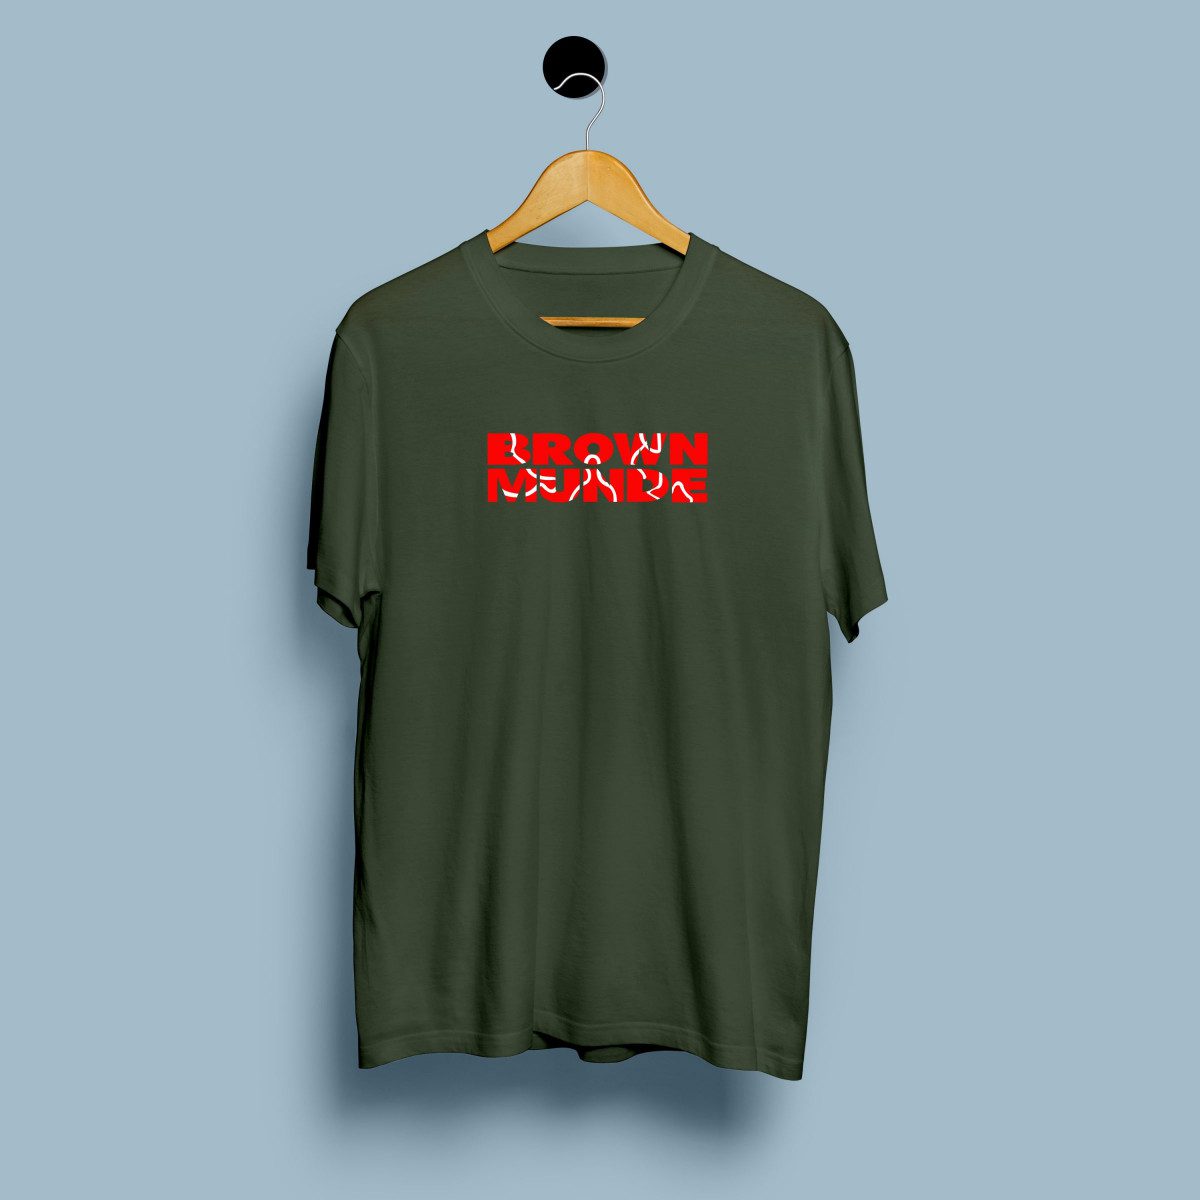 Brown Munde T Shirt - Buy Punjabi Slogan Printed Tshirts Online For Men